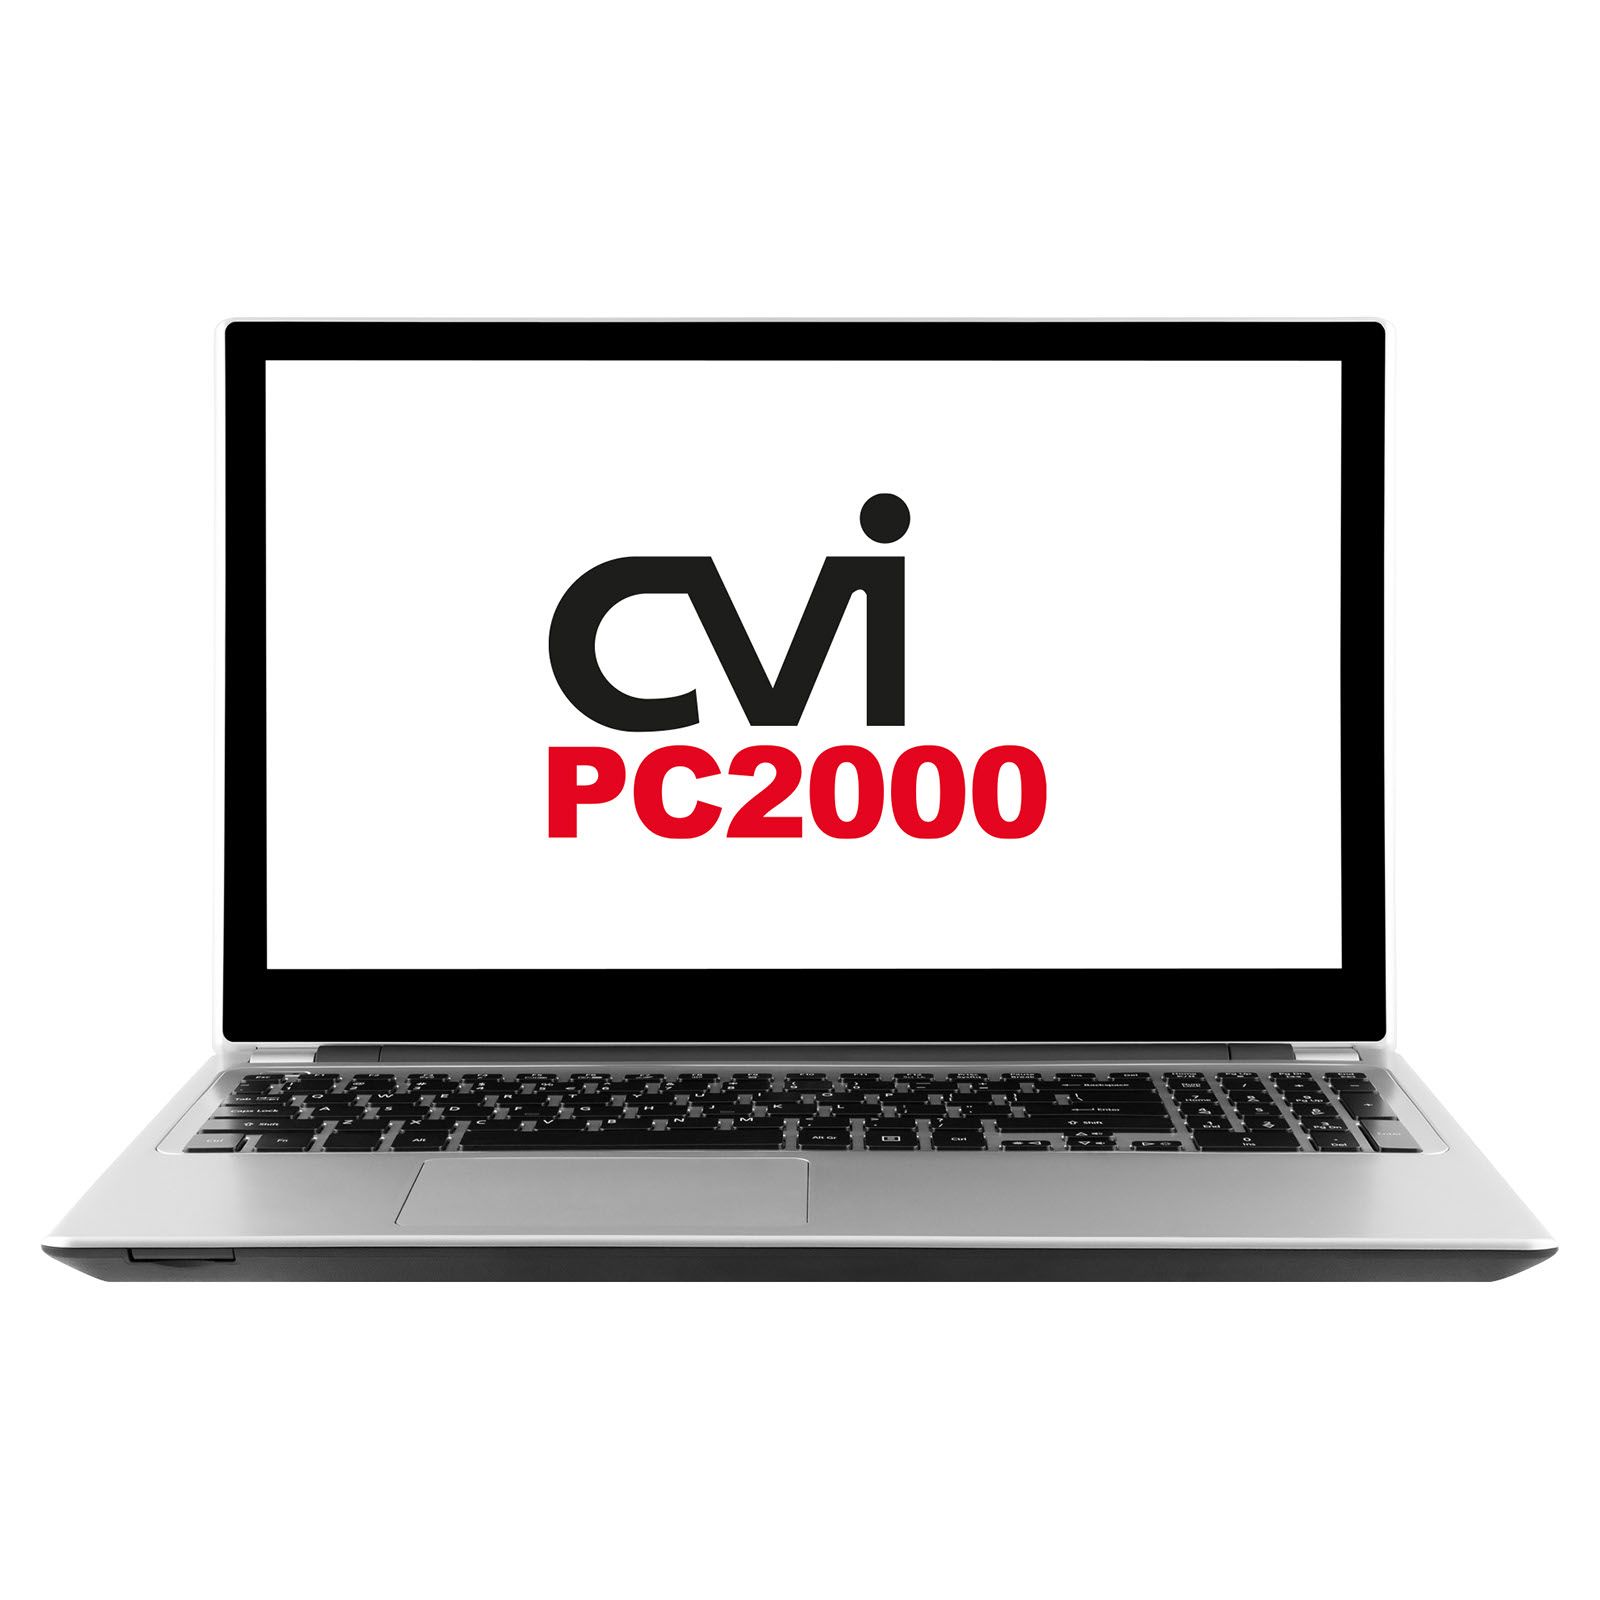 CVI PC2000 foto produktu